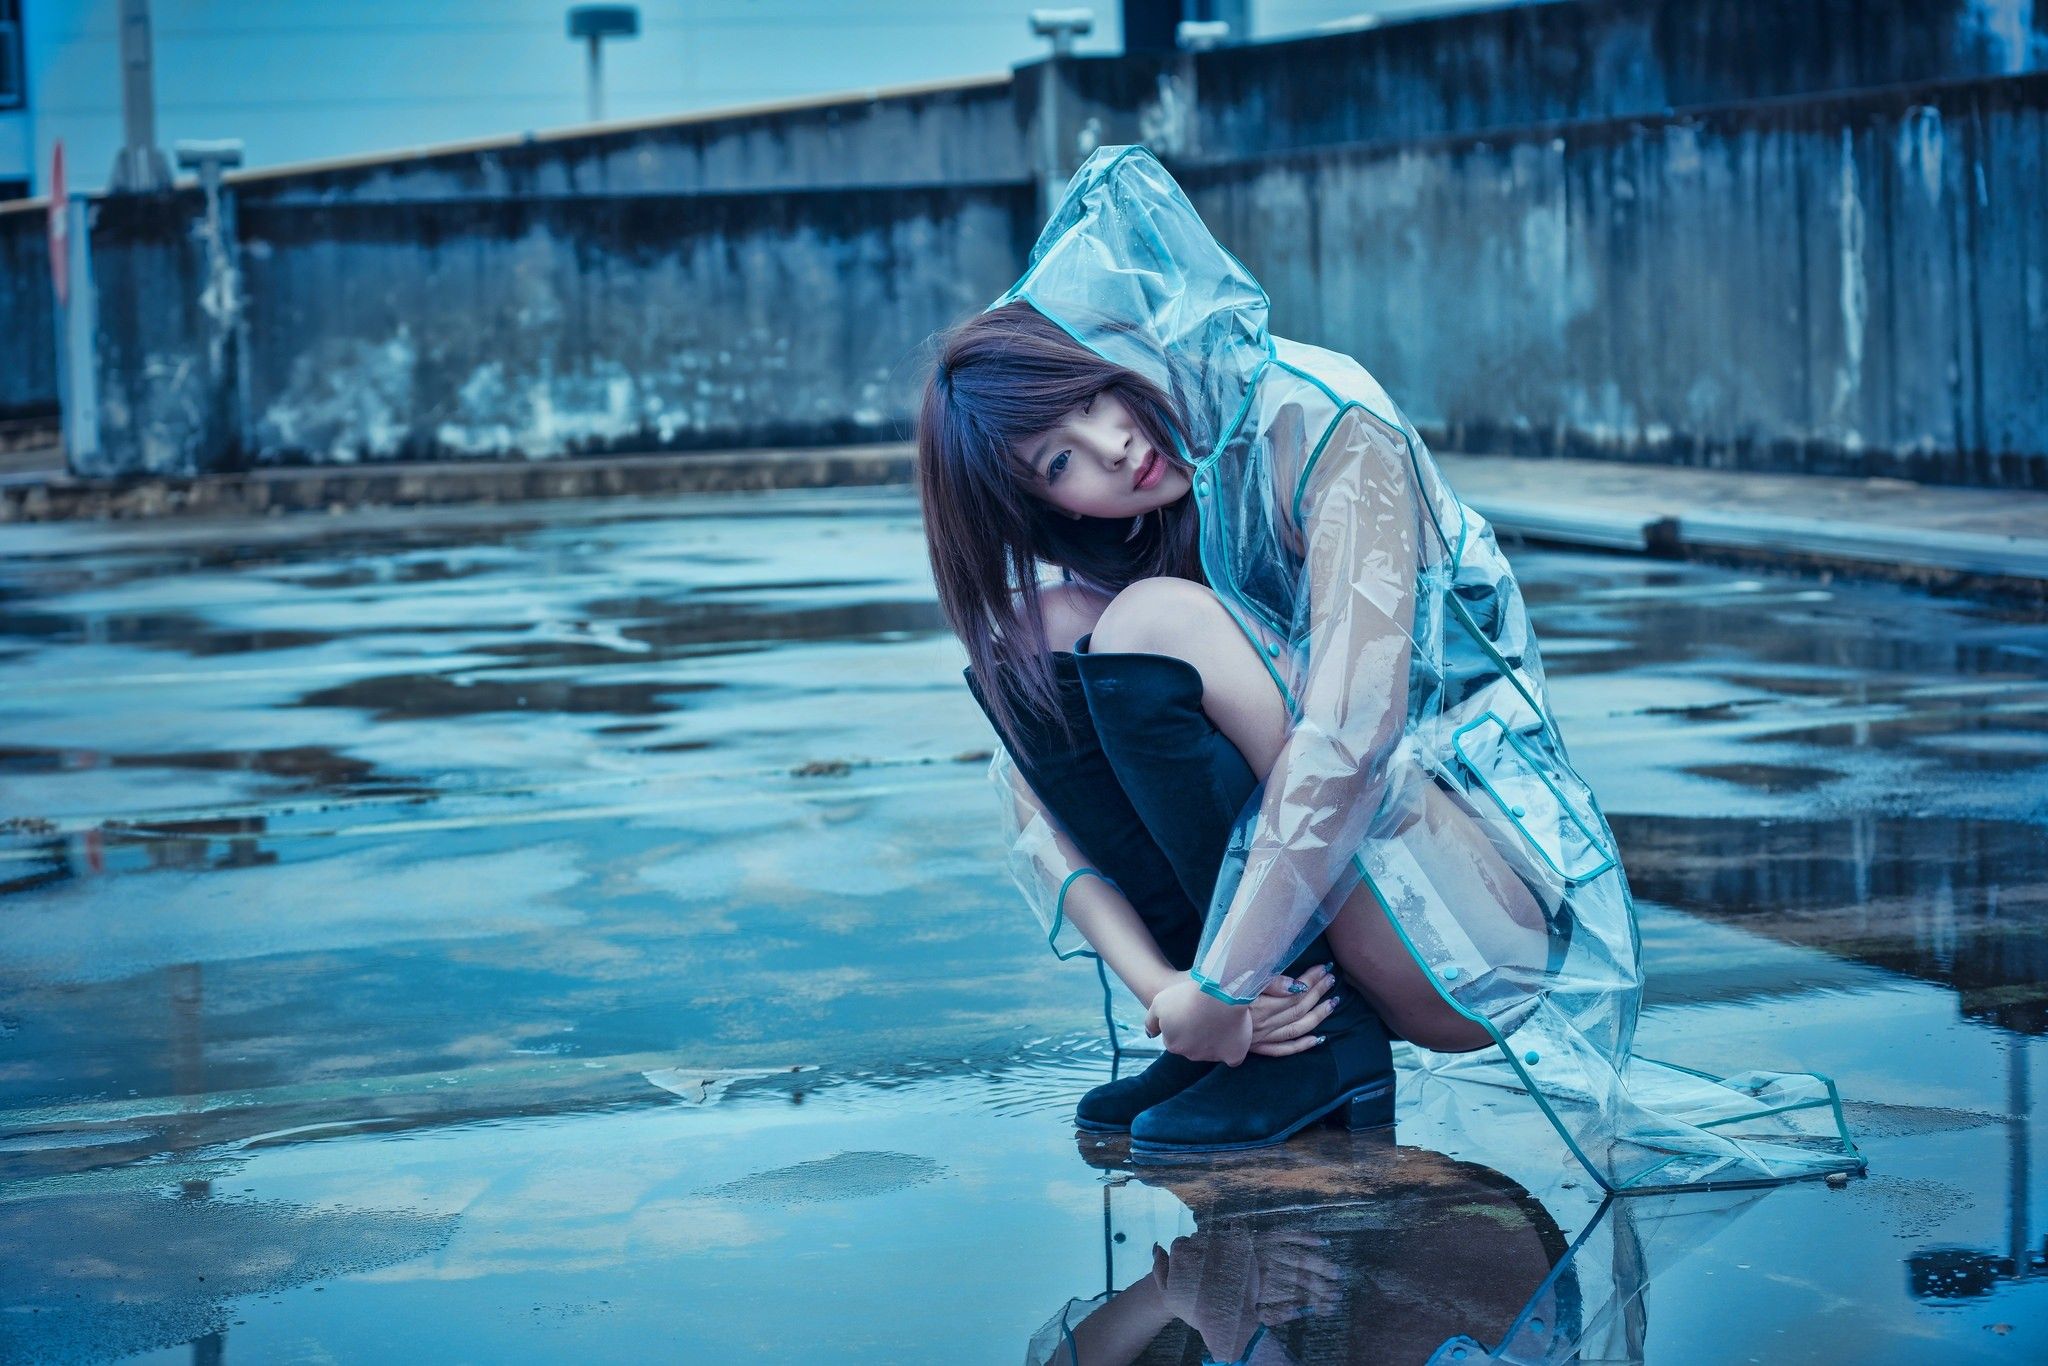 #Asian, #kneeling, #model, #women outdoors, #women, #rain